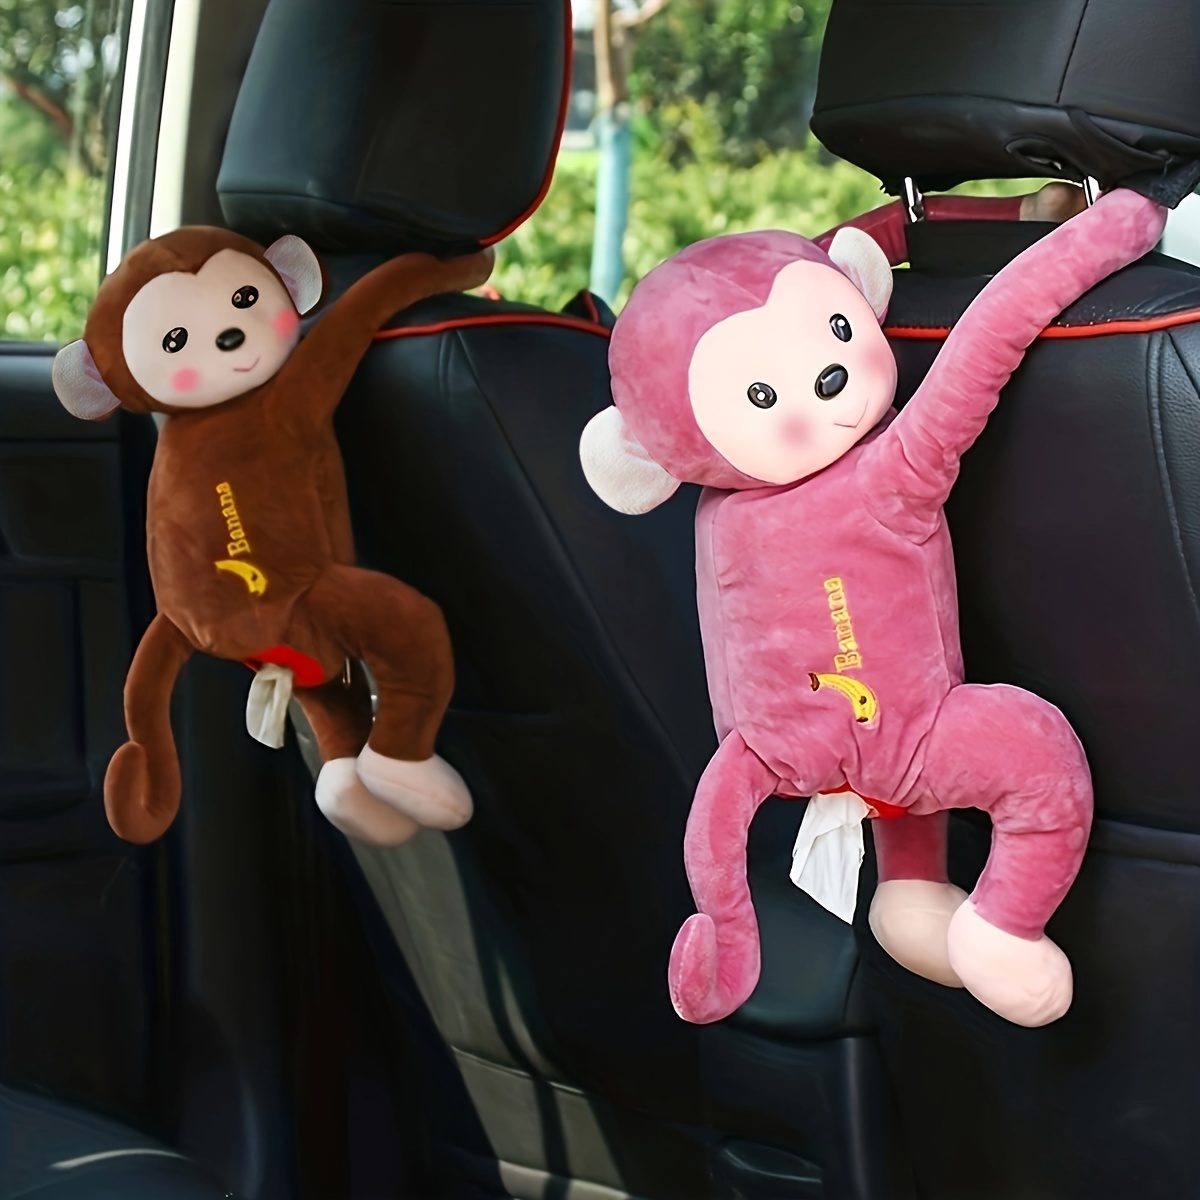 Cute Cartoon Monkey Car Tissue Box Portable Cute Plush Car Tissue